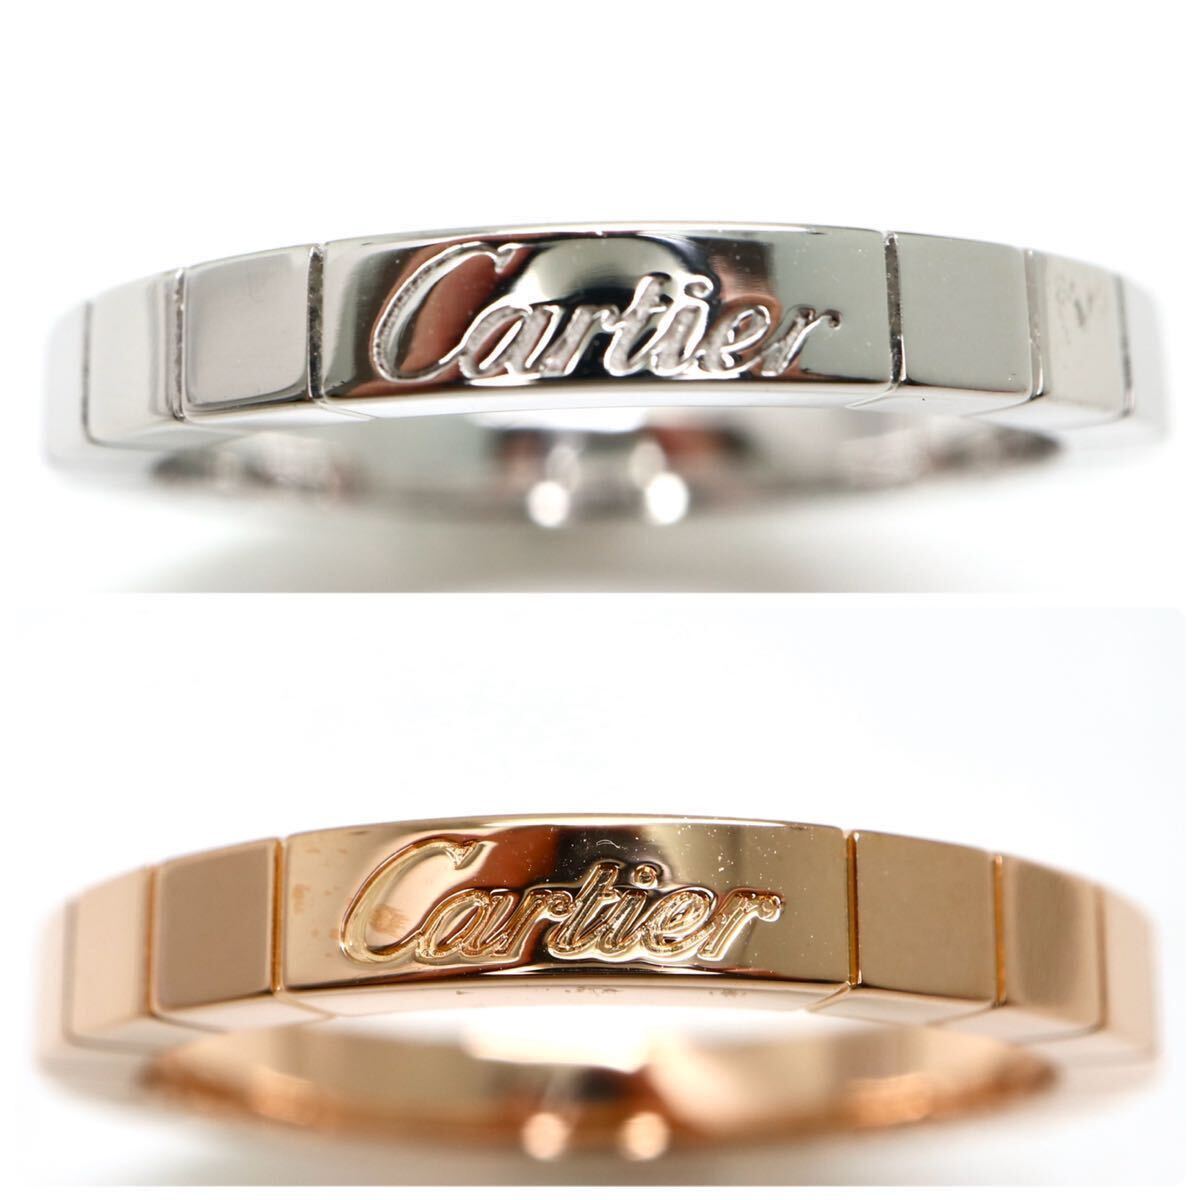 Cartier(カルティエ)《K18(750)ラニエール ペアリング》M ◎約14.1g 約20号 ring 指輪 jewelry ジュエリー FA1/FA1の画像1